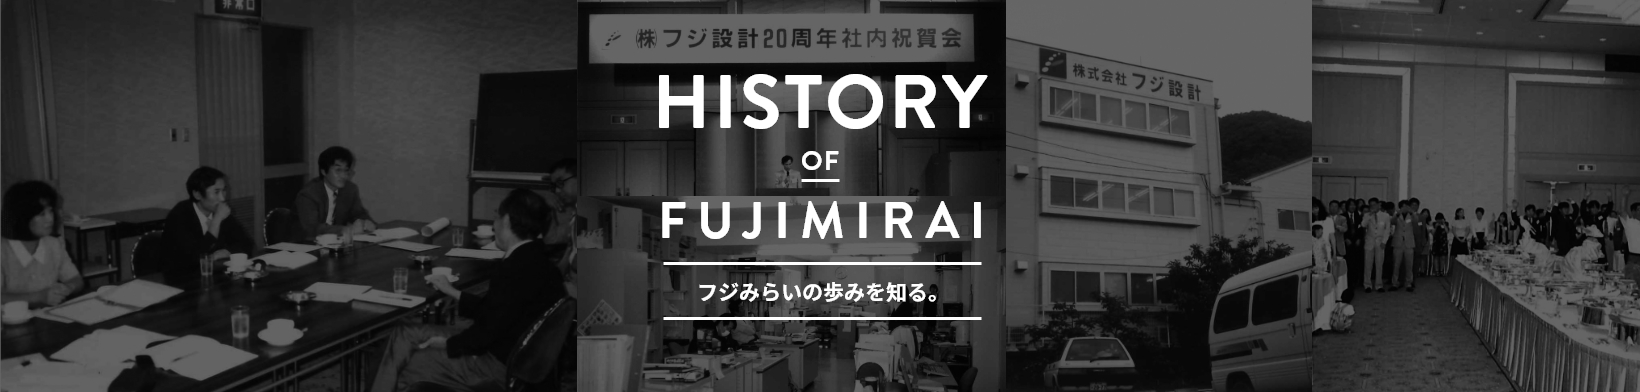 HISTORY OF FUJIMIRAI フジみらいの歩みを知る。